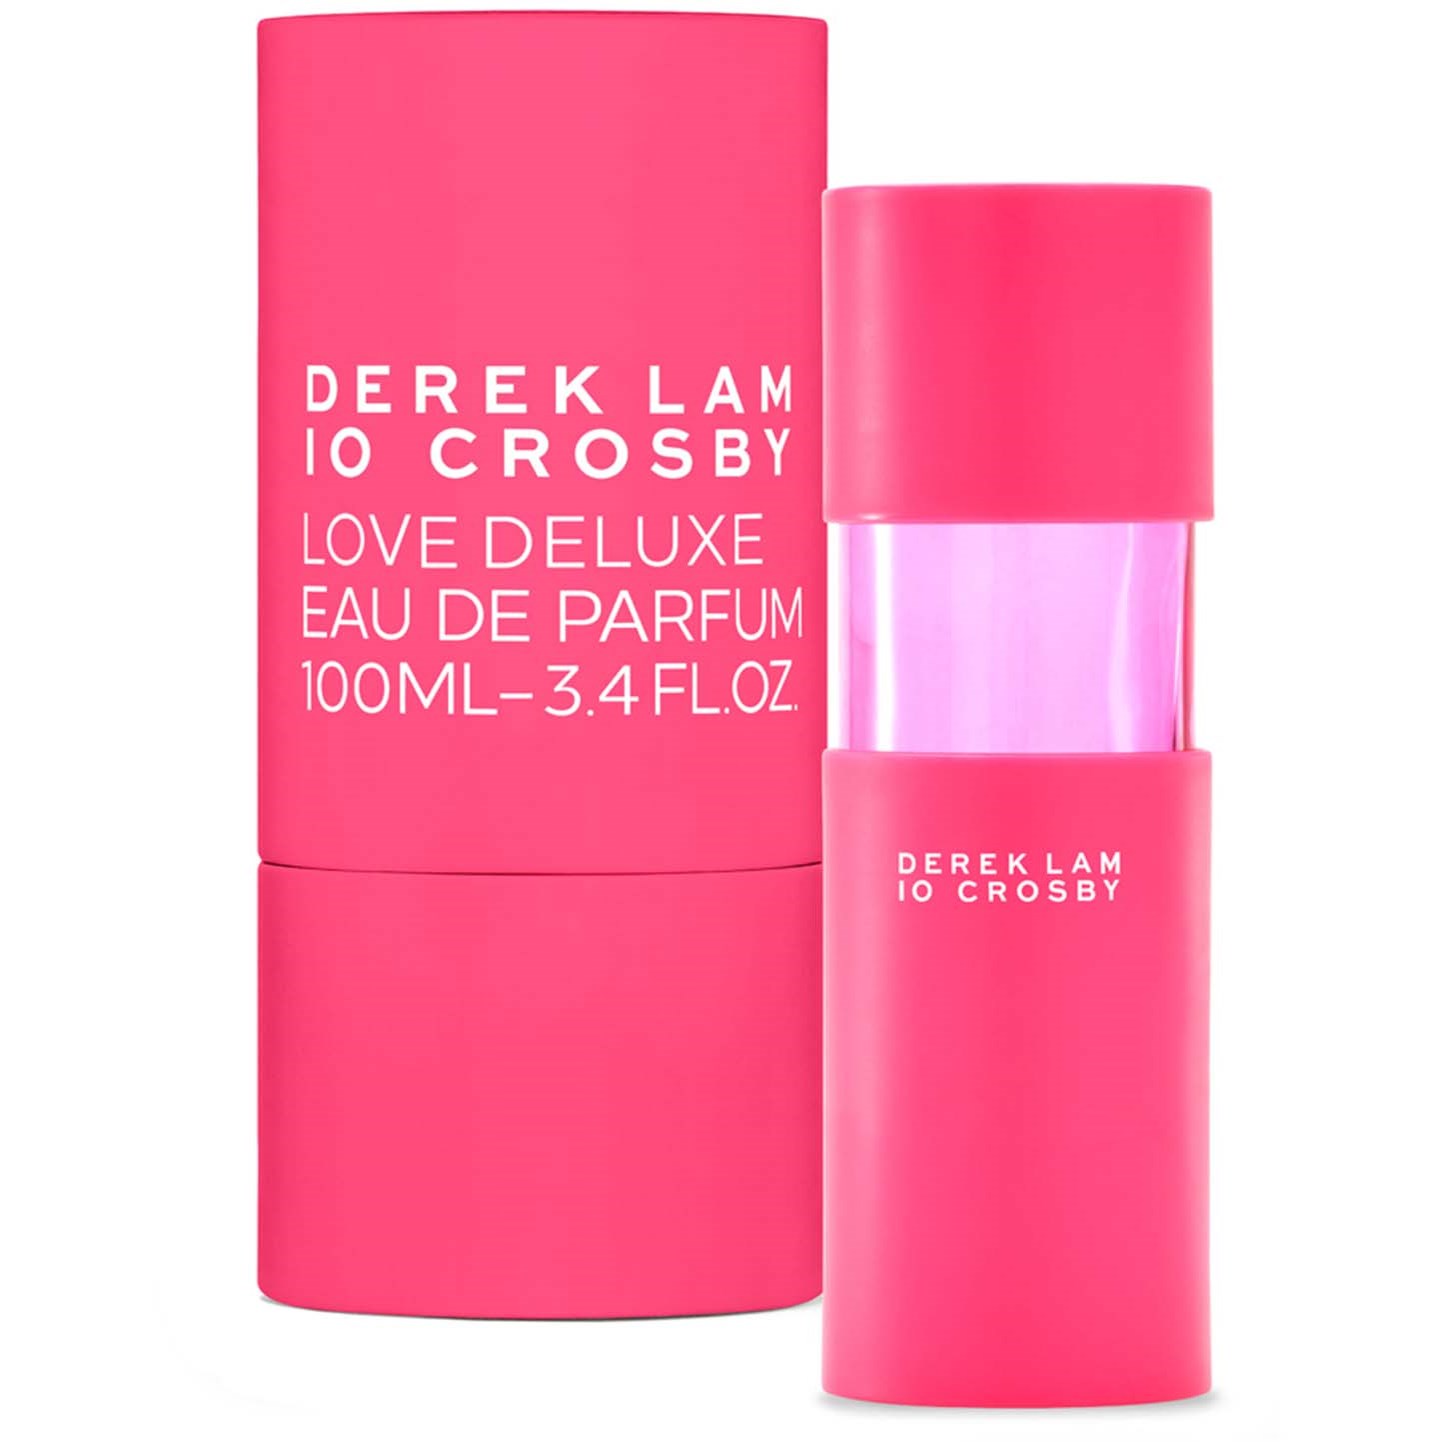 Derek Lam 10 Crosby Love Deluxe Eau de Parfum 100 ml